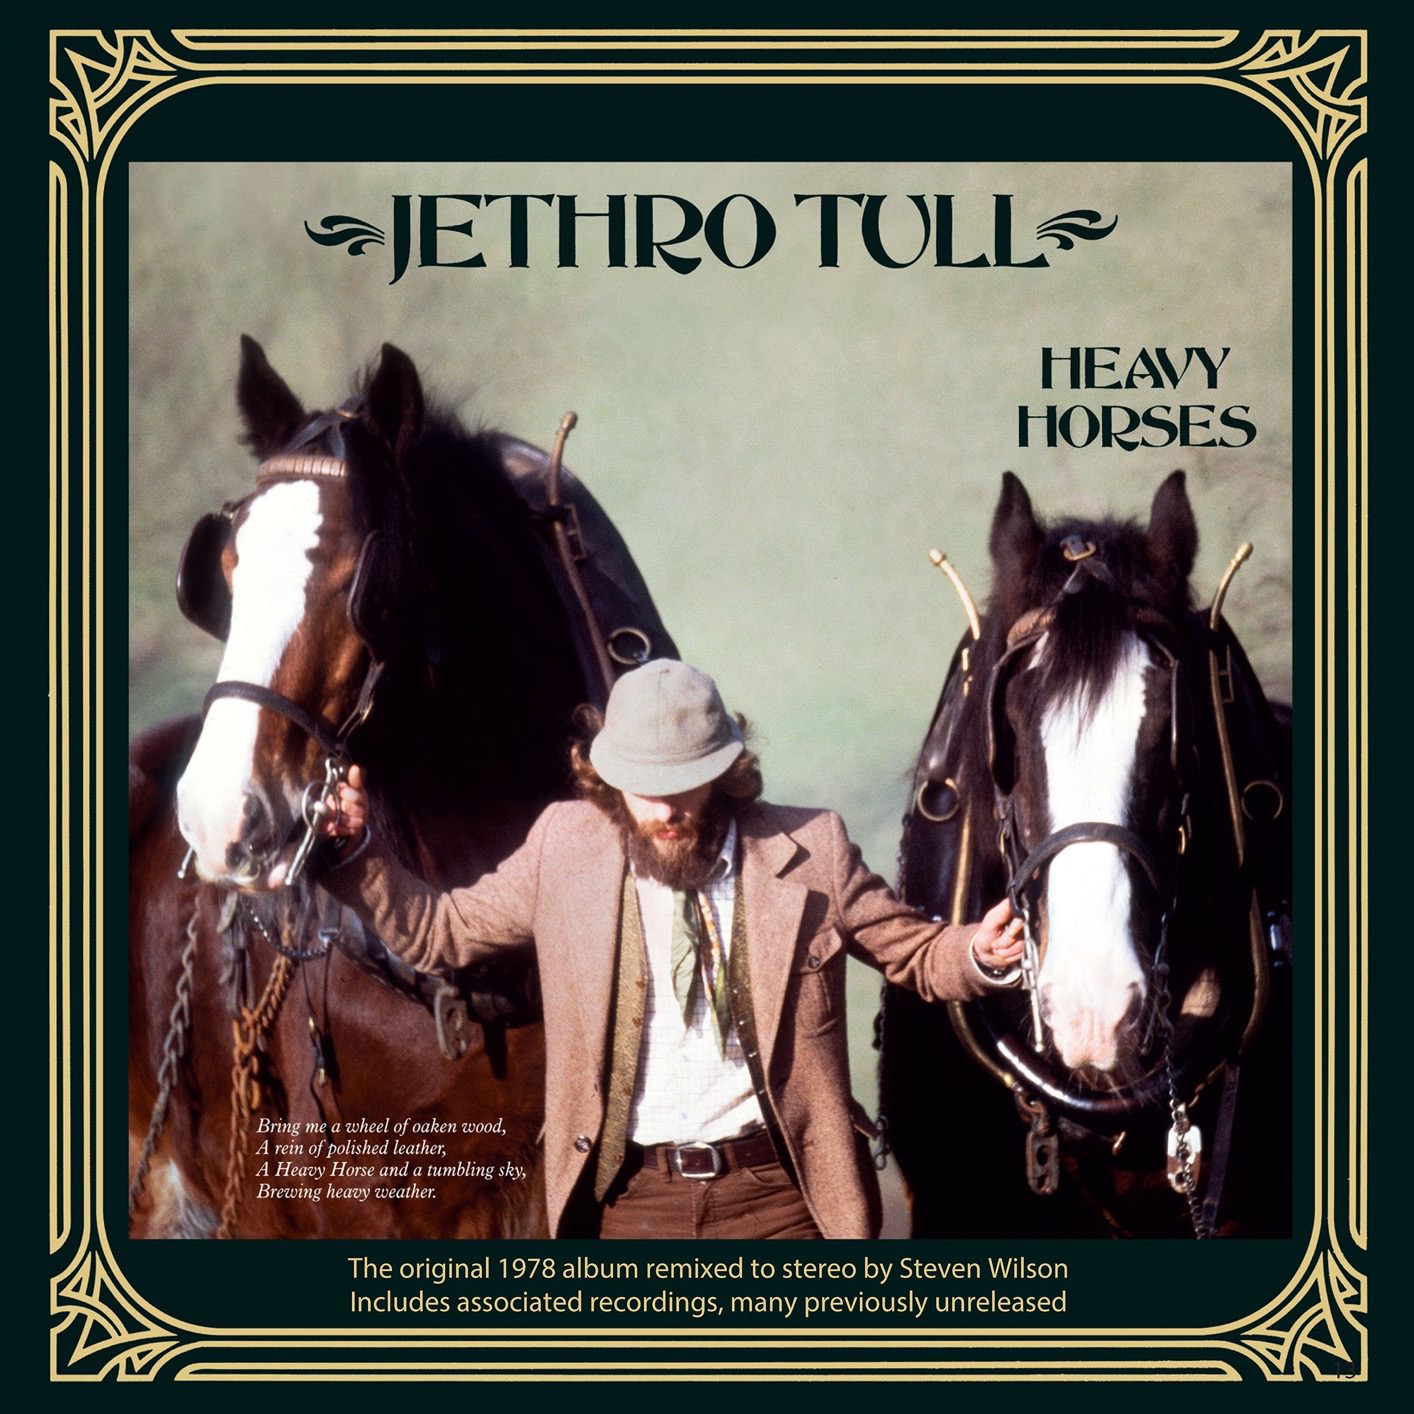 Jethro Tull - Heavy Horses (Steven Wilson Remix) (1978/2018) [FLAC 24bit/96kHz]